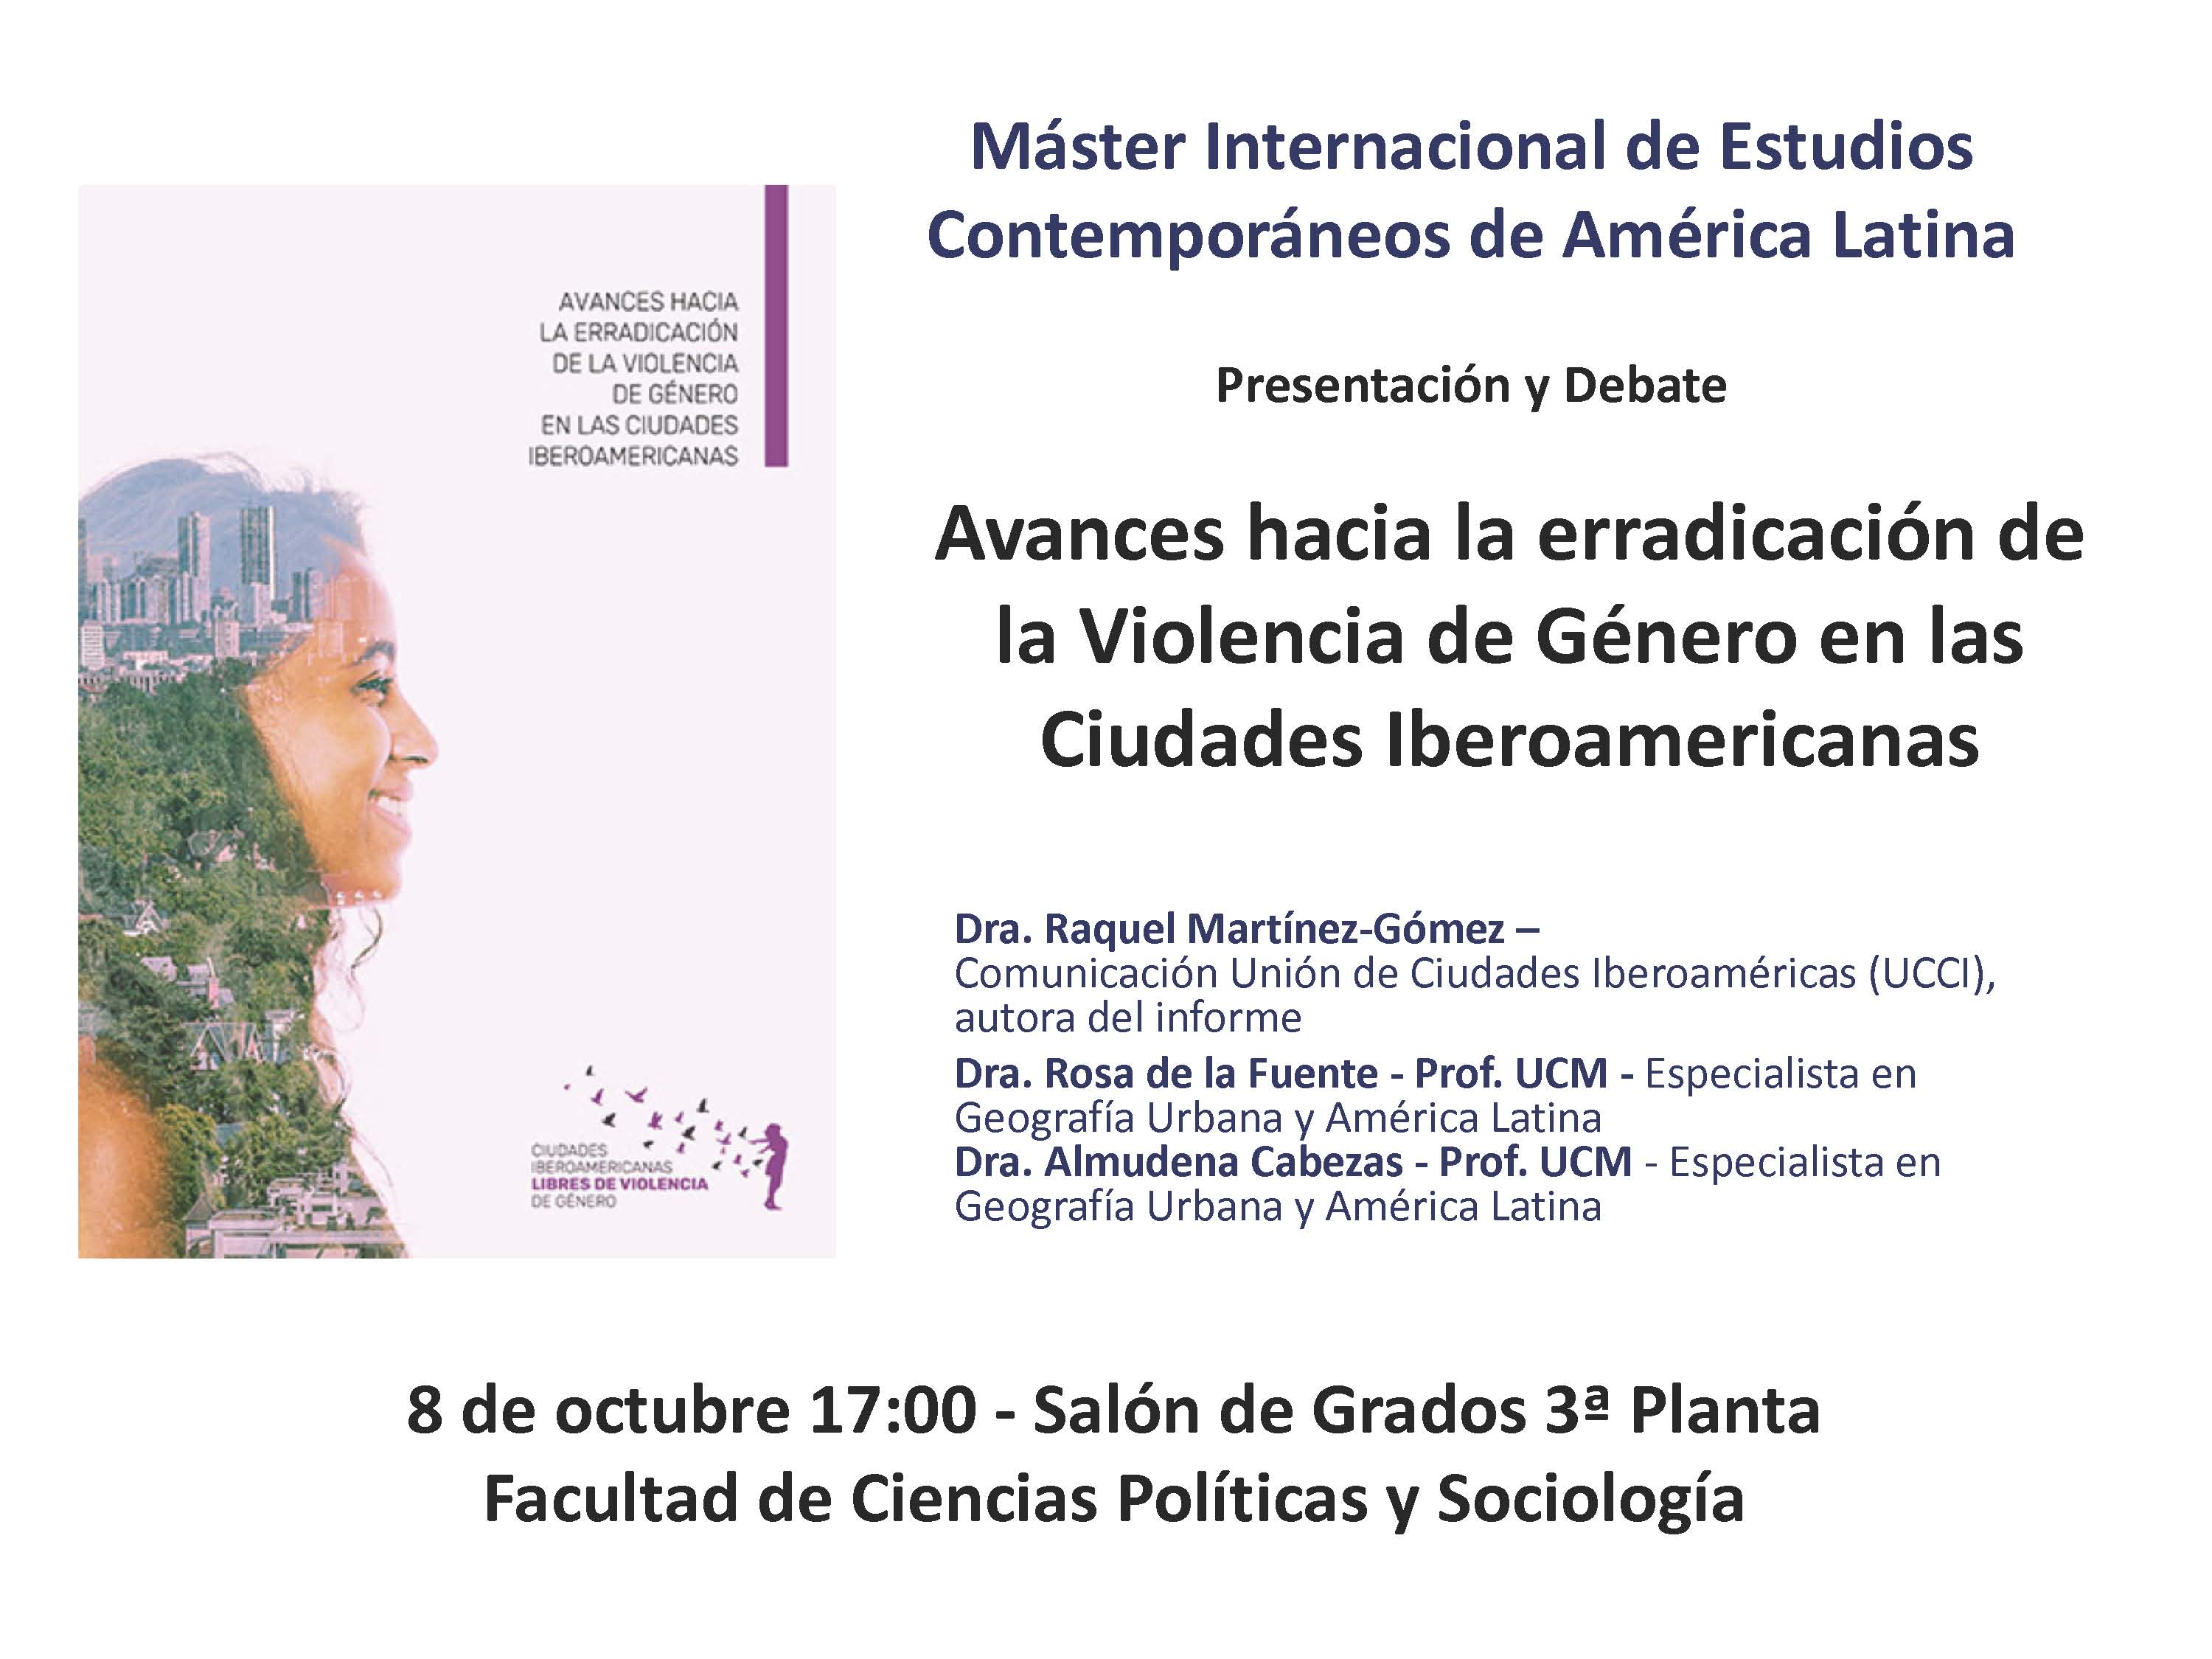 Presentación pública del Informe y debate "Avances hacia la erradicación de la violencia de género en las ciudades Iberoamericanas" Lunes 8 octubre